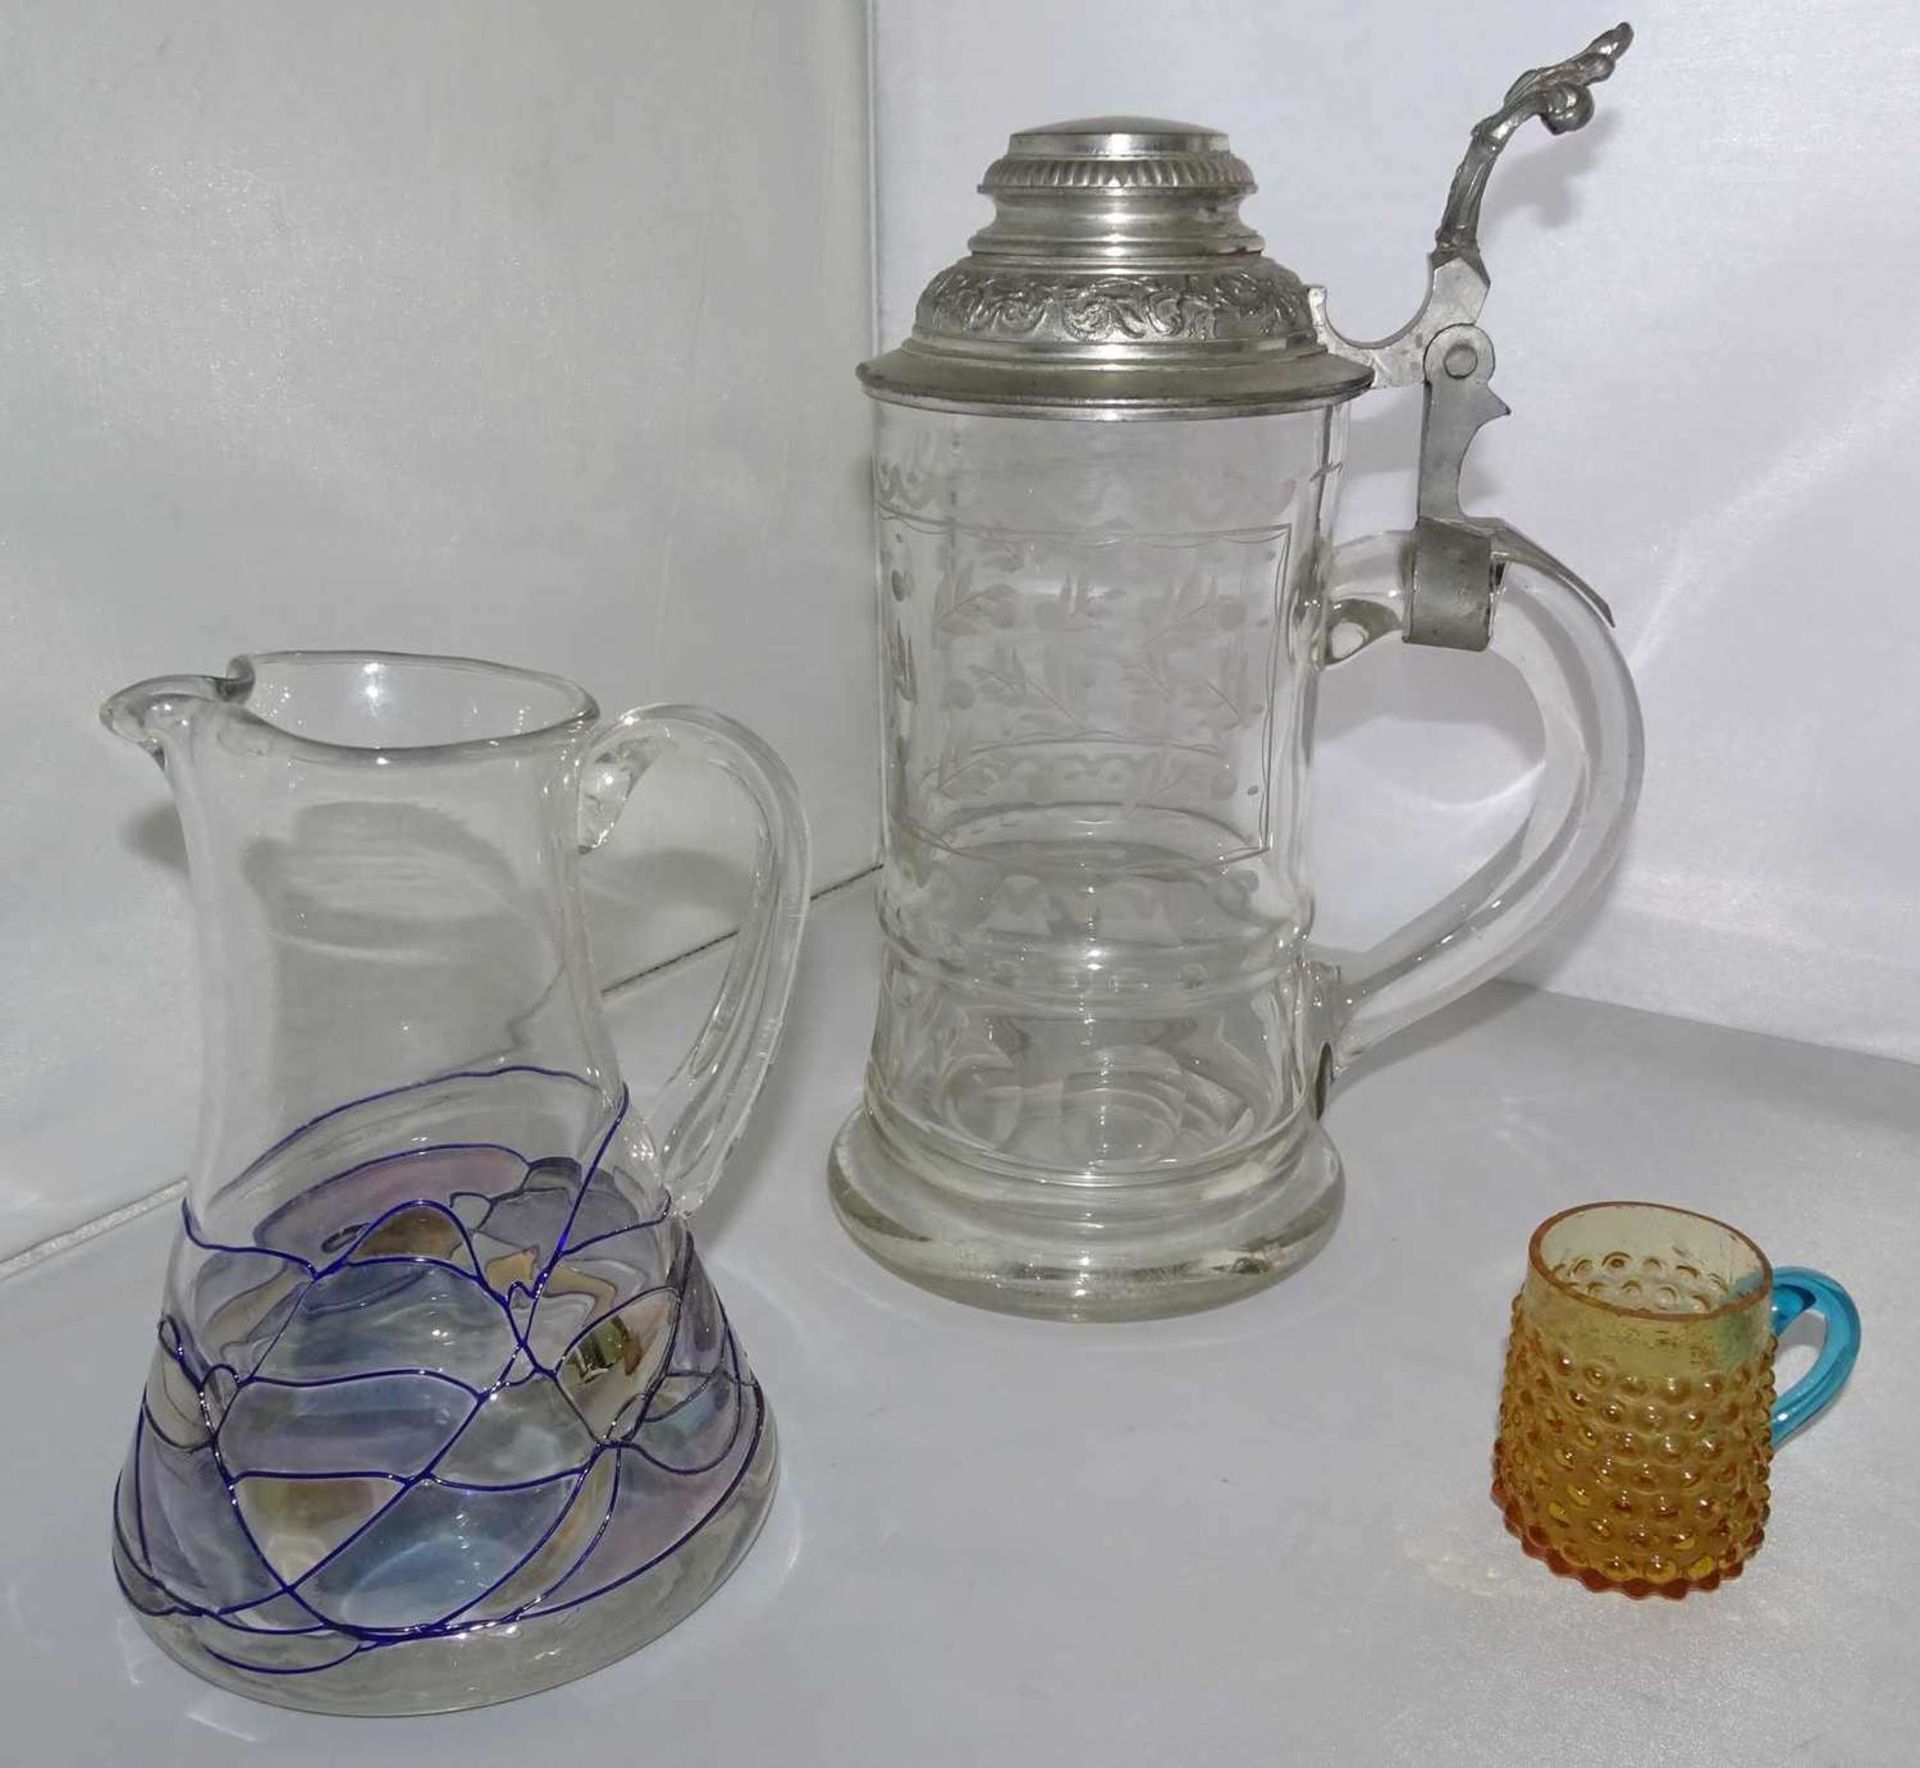 3 Teile älteres Glas, dabei schöner Bierkrug mit feinem Schliff, 1 Krug mit Aufschmelzungen, sowie 1